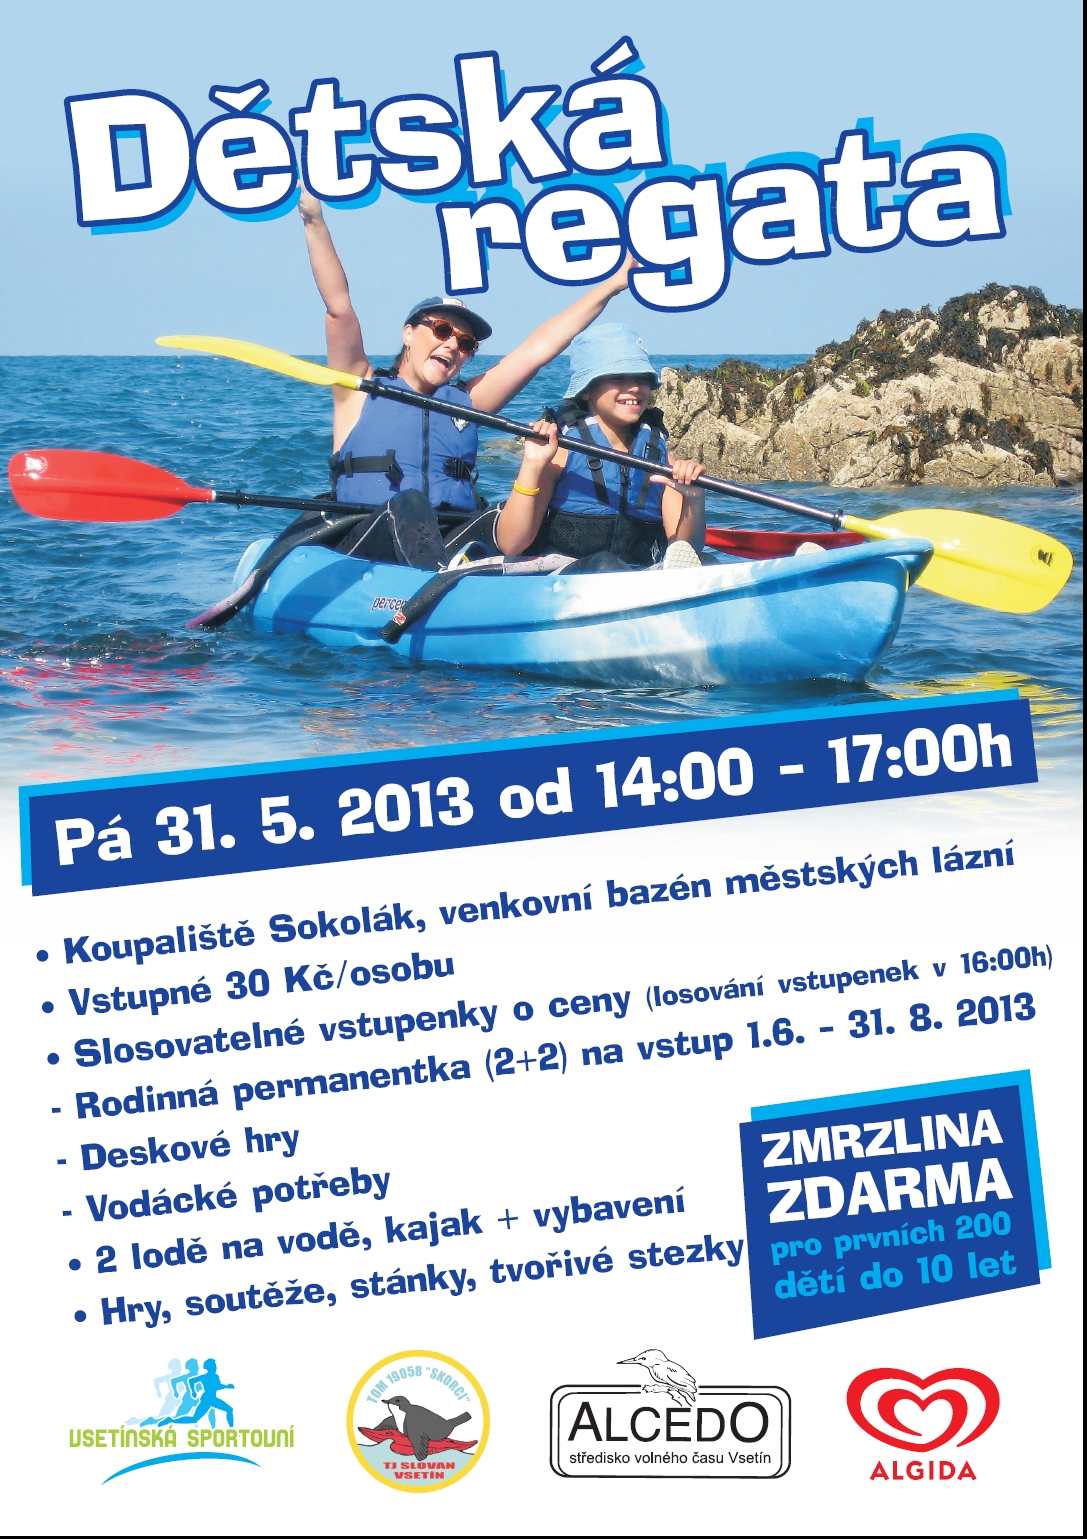 Dětská regata, dětský den, akce pro děti 31.5.2013 Vsetín